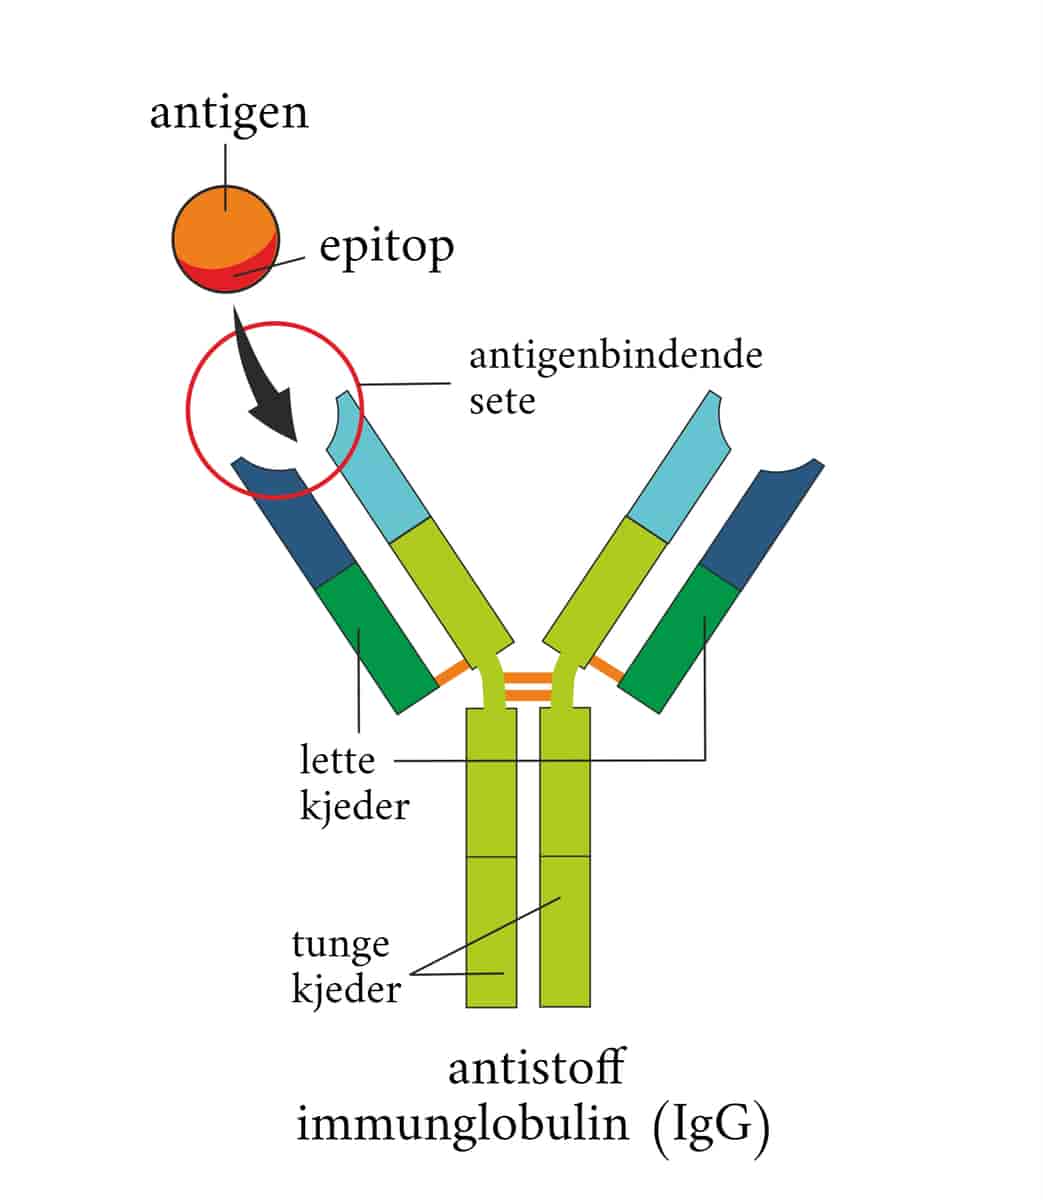 Antigen, epitop og antistoff